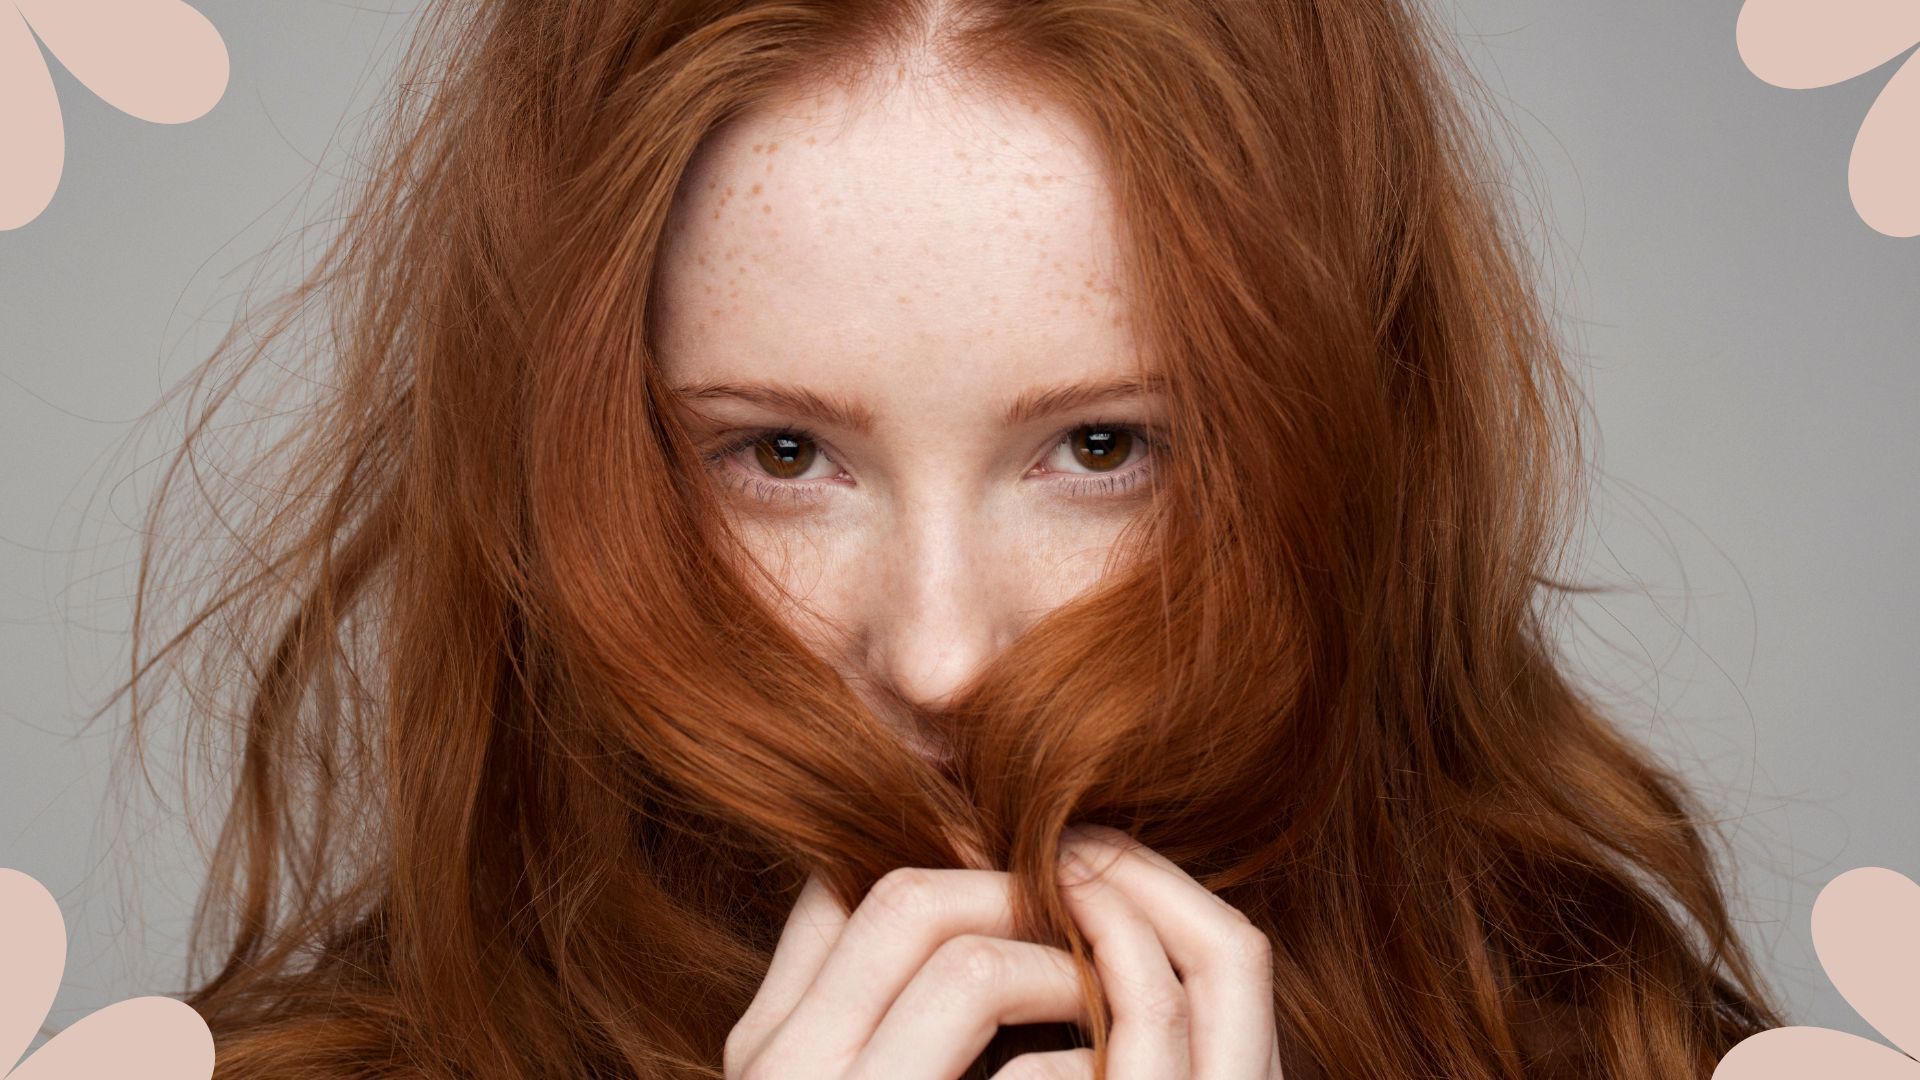 Valerie lewis amazing redhead